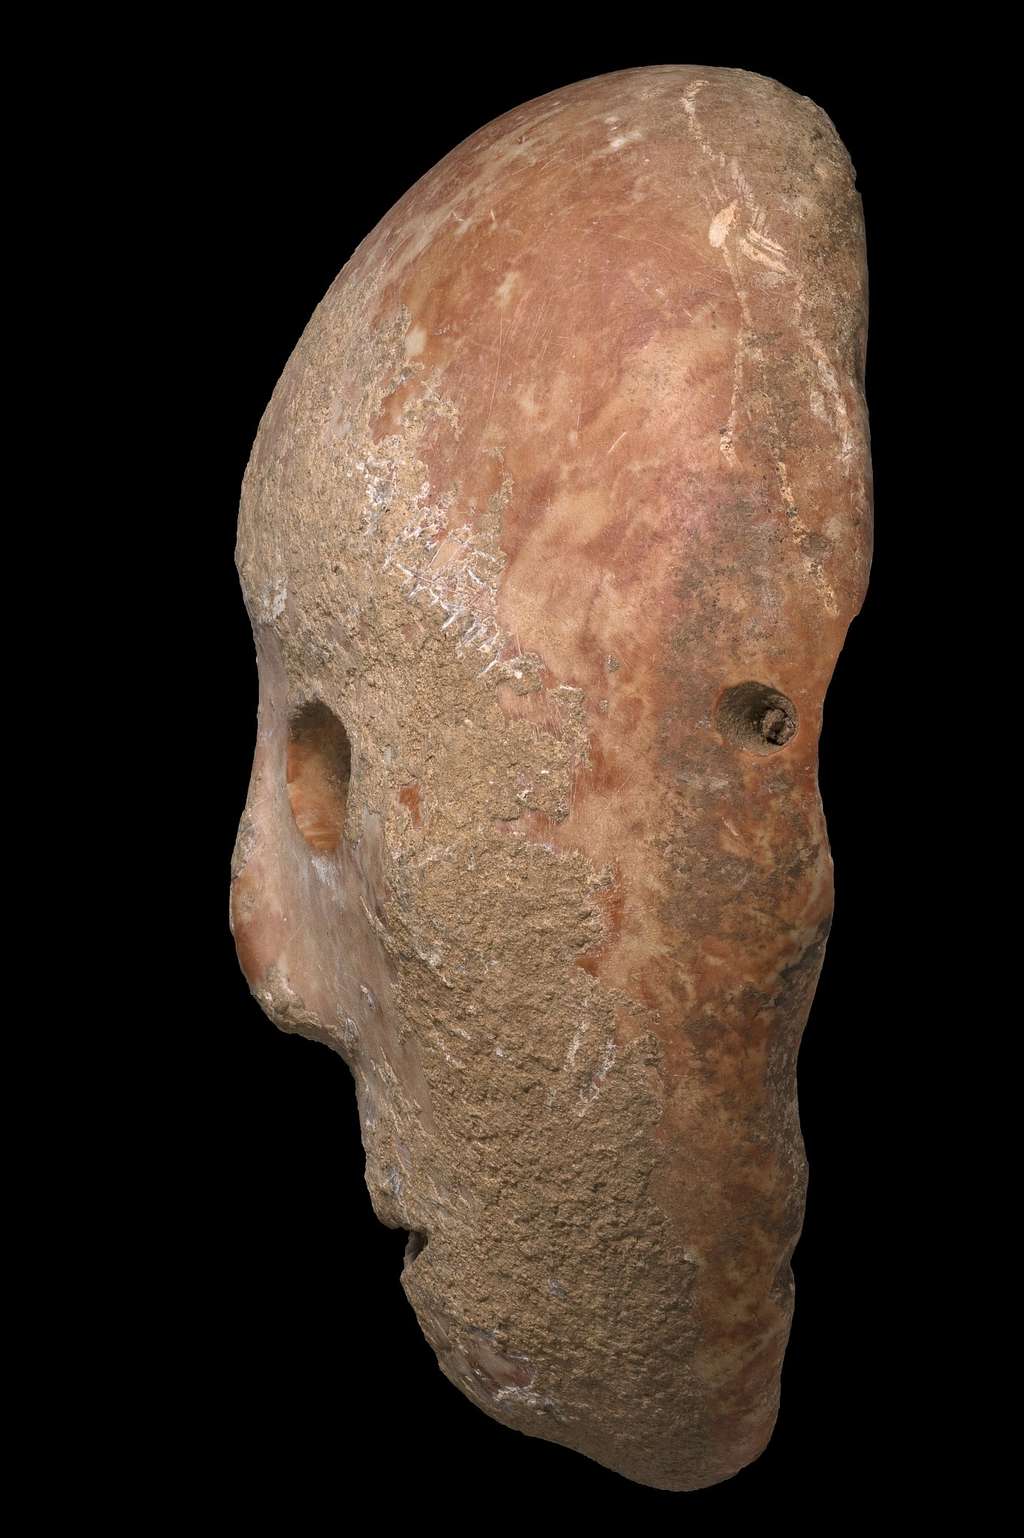 Ce masque de pierre vieux de 9.000 ans était un objet de rituel. C'est une perle rare, car il fait partie d'une petite collection comptant seulement 15 masques répartis à travers le globe. © Clara Amit, <em>Israel Antiquities Authority</em>